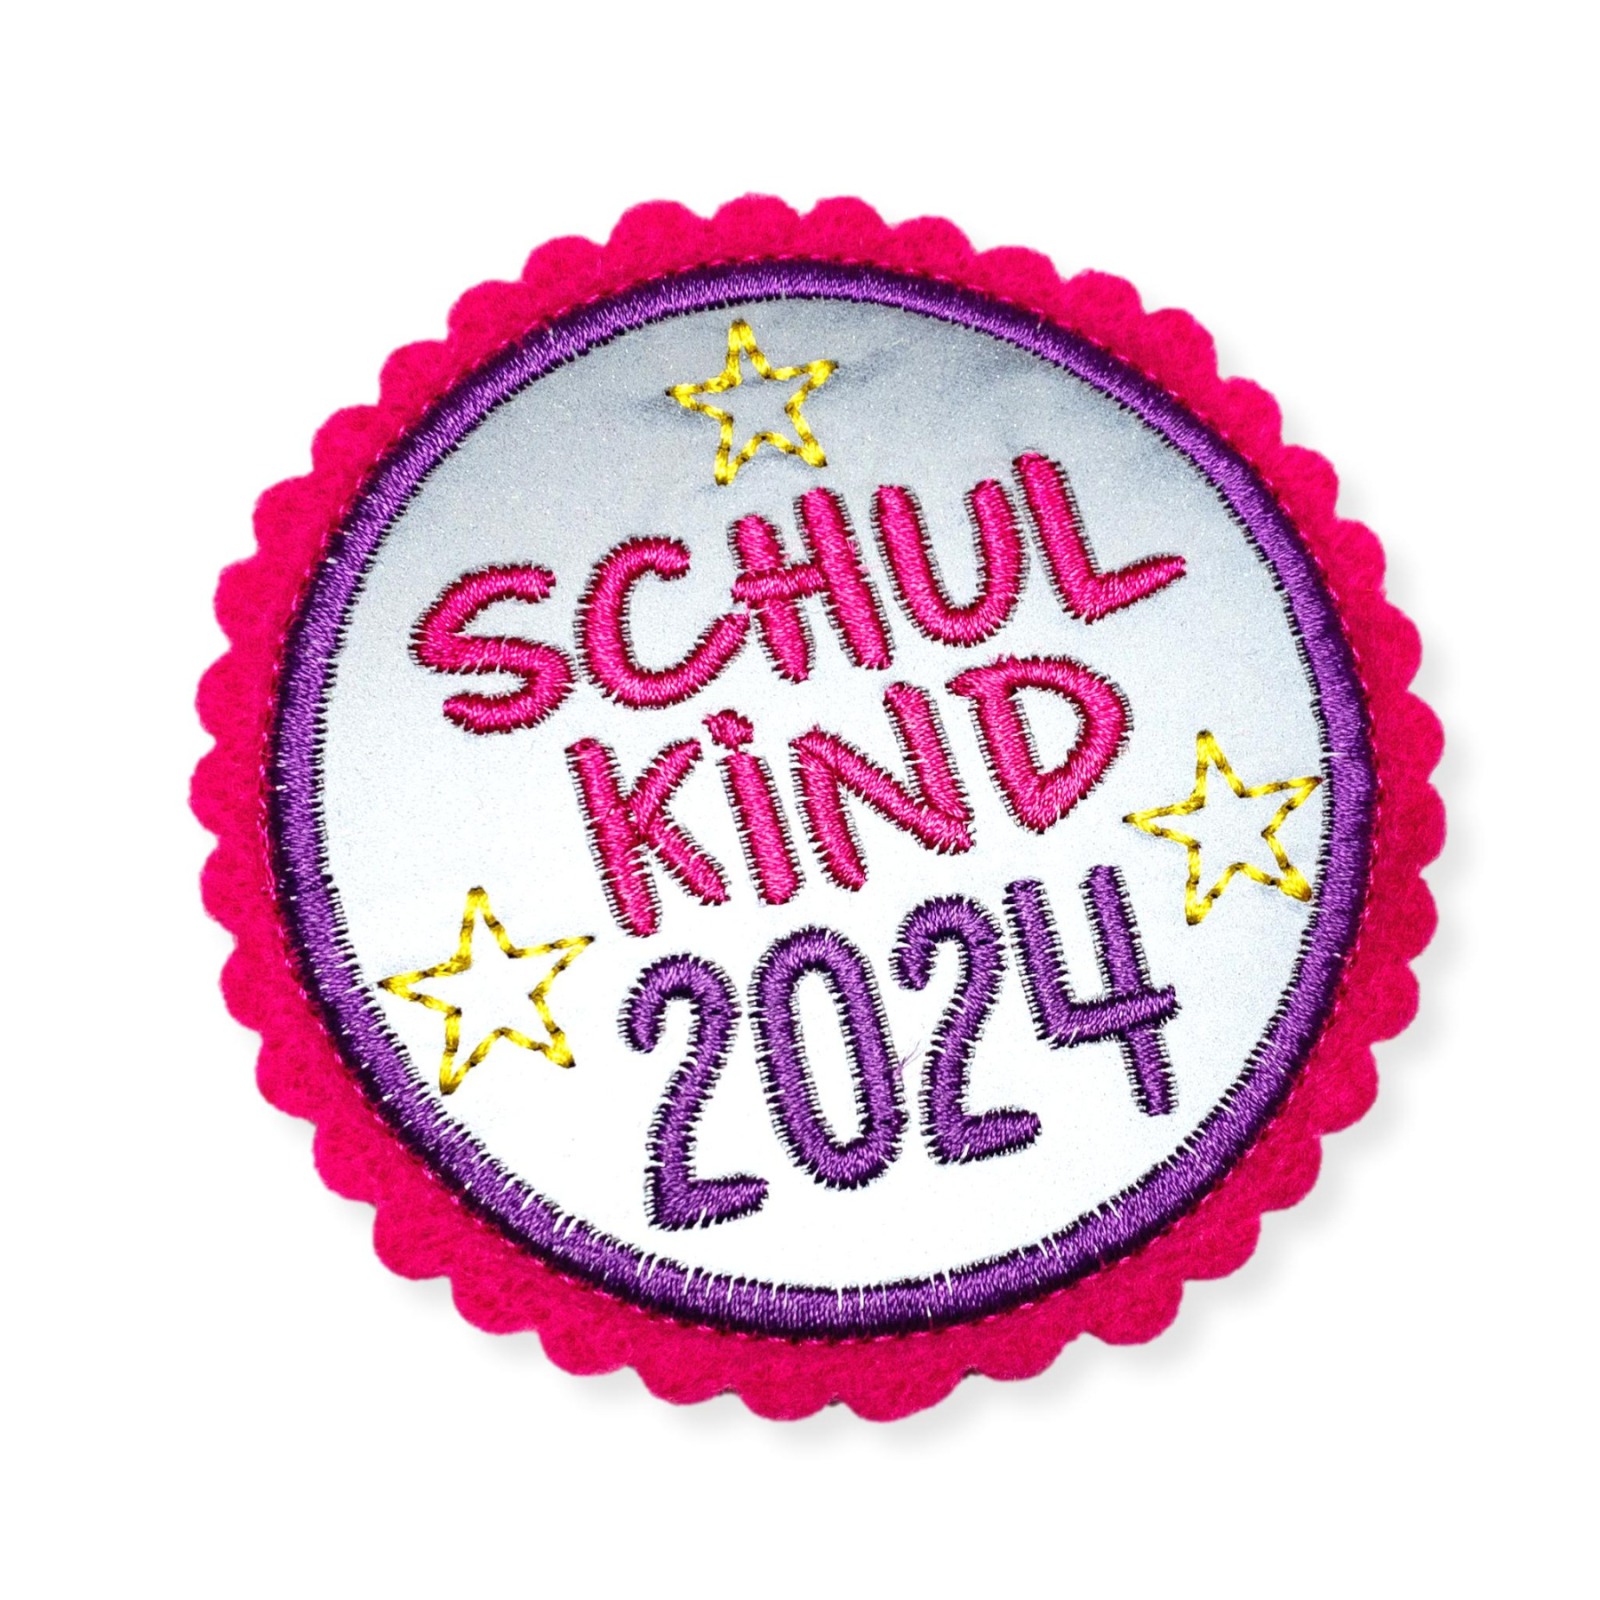 Klettie Schulkind 2024, ca. 8cm Durchmesser, Reflektorstoff, pink, lila, Schulranzen mit Klett 4